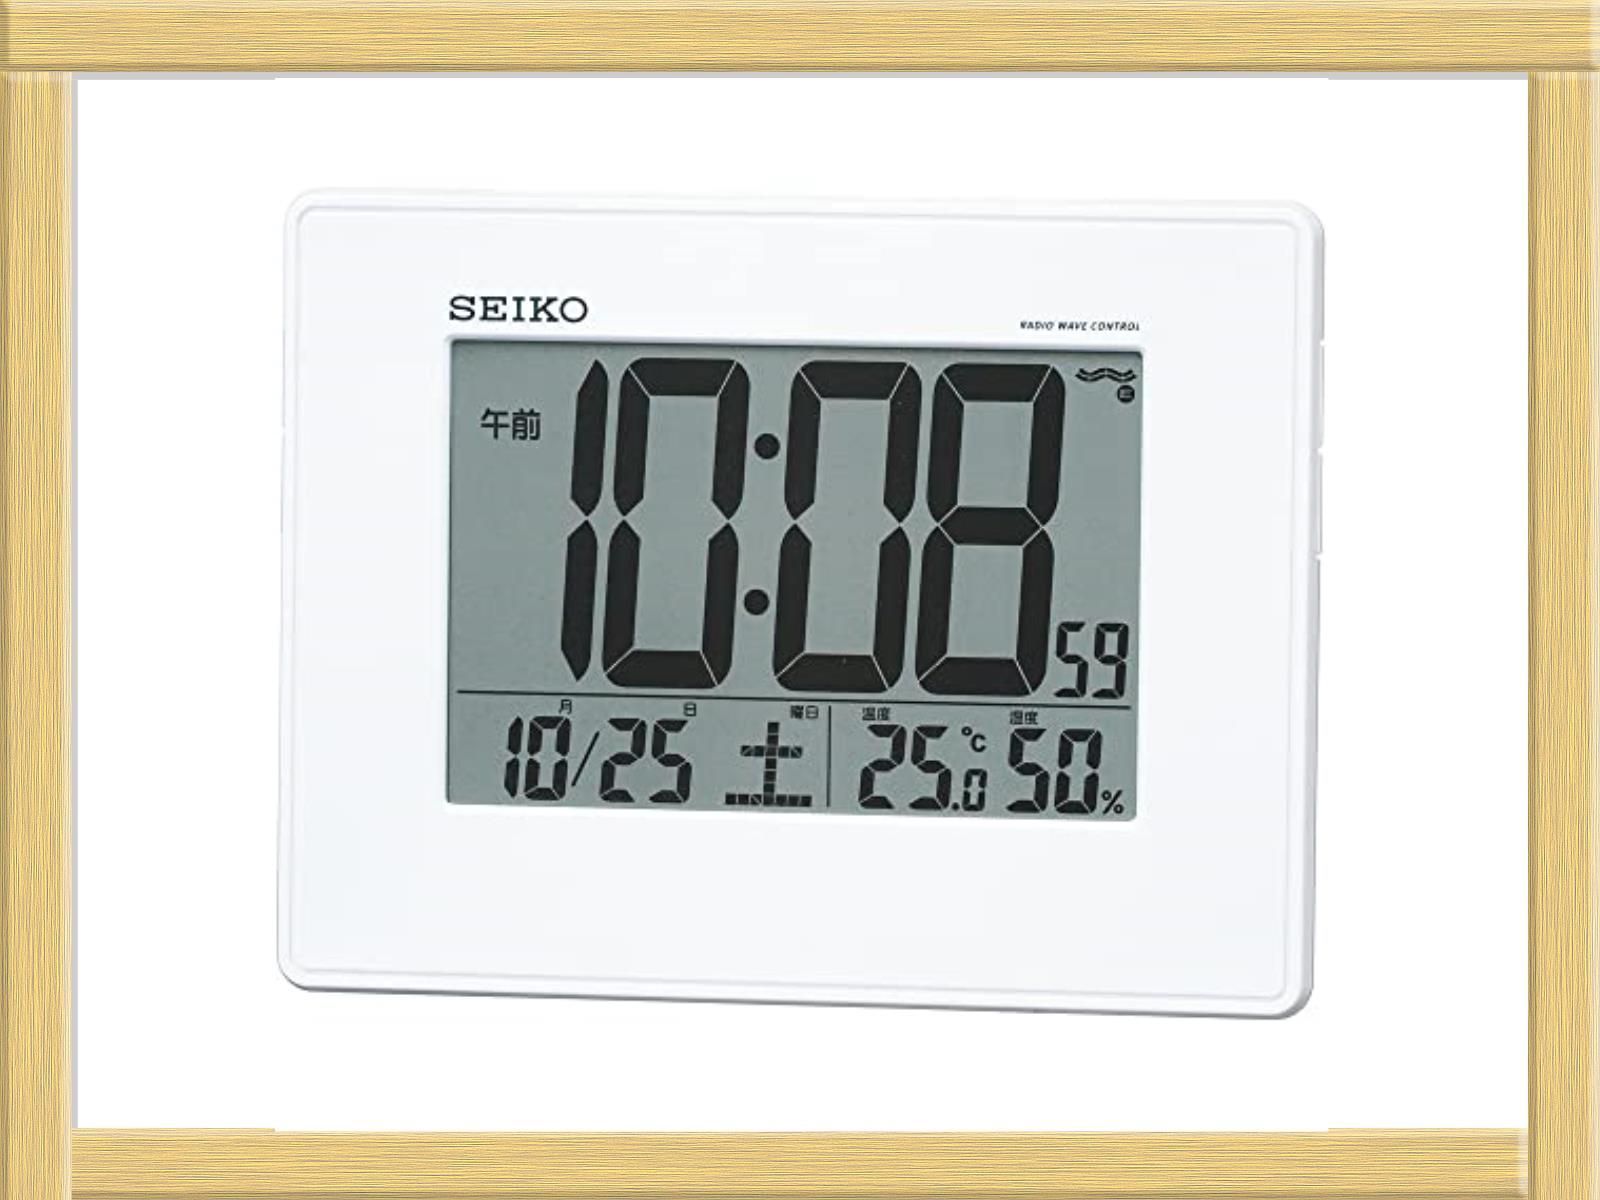 【受賞店舗】 セイコー クロック 目覚まし時計 電波 デジタル 掛置兼用 カレンダー 温度 湿度 表示 大型画面 白 パール SQ770W SEIKO 